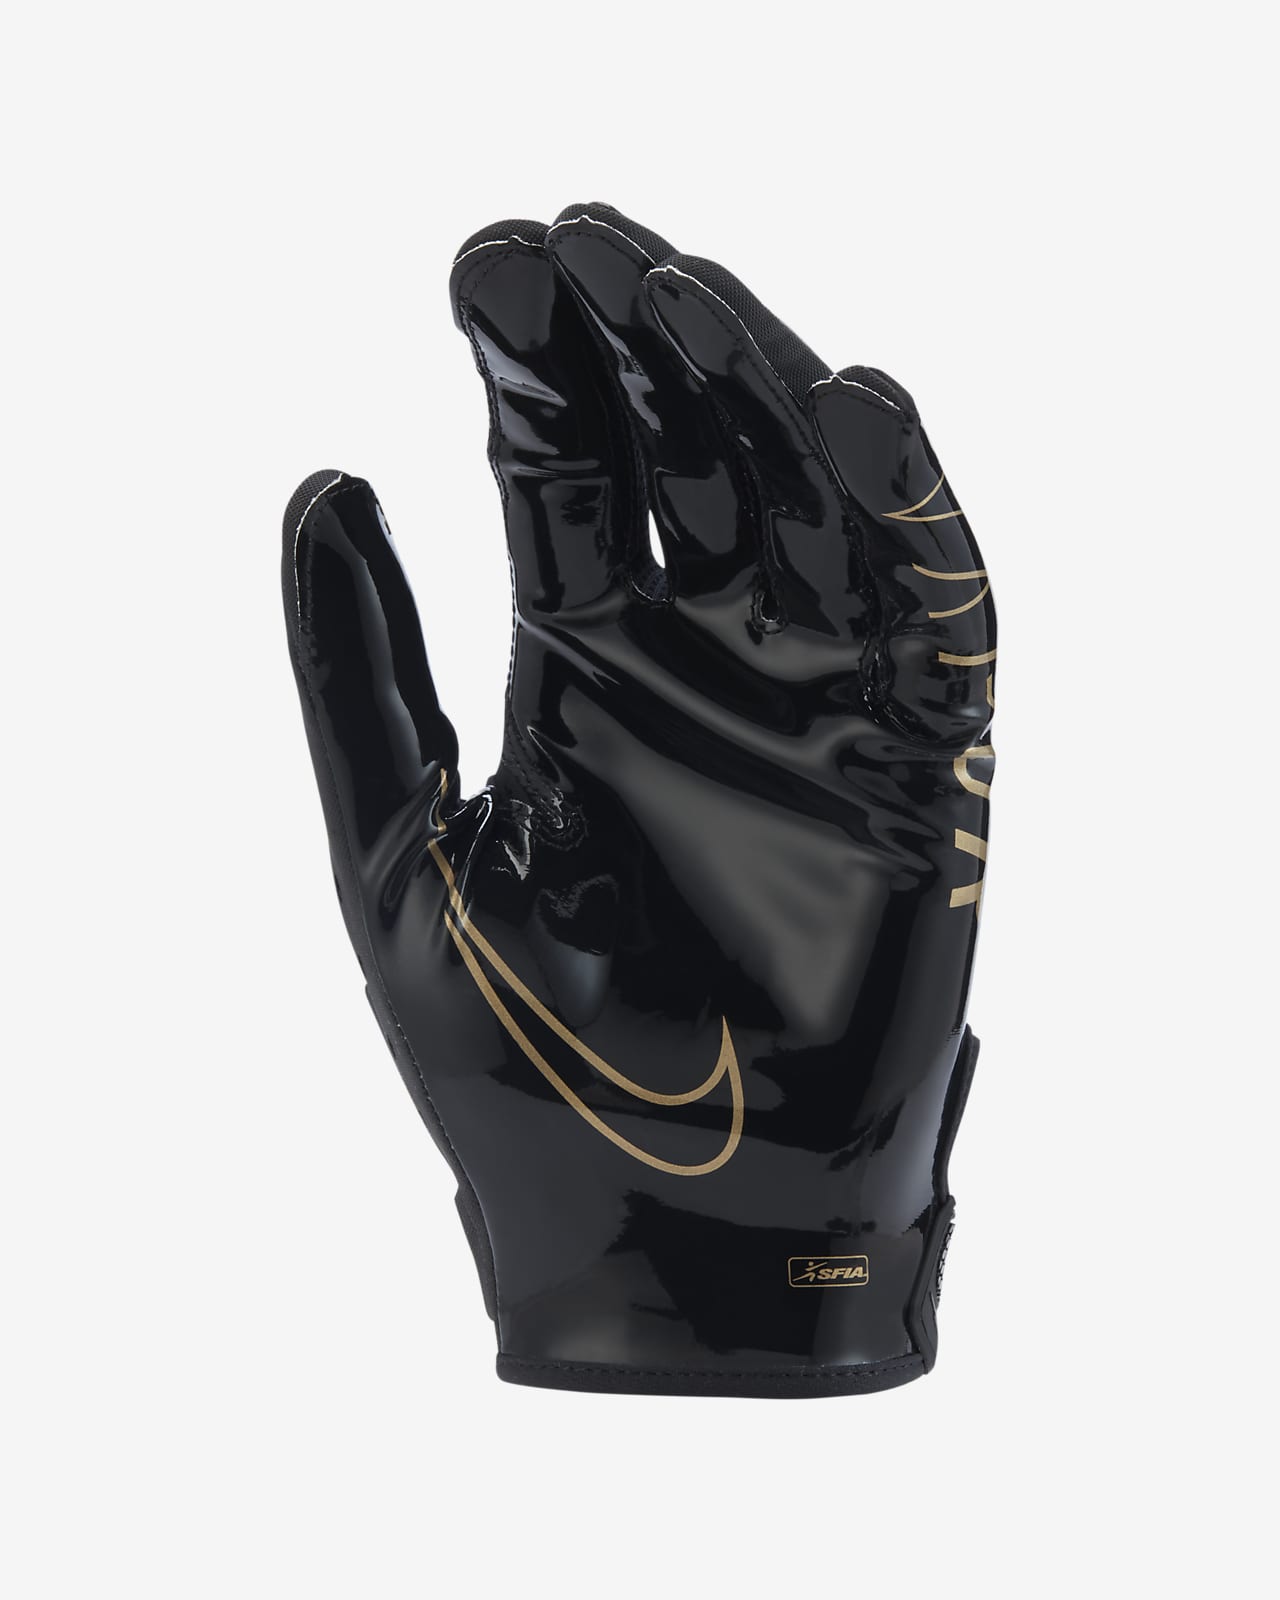 Nike Vapor Jet 6.0 Football Gloves 